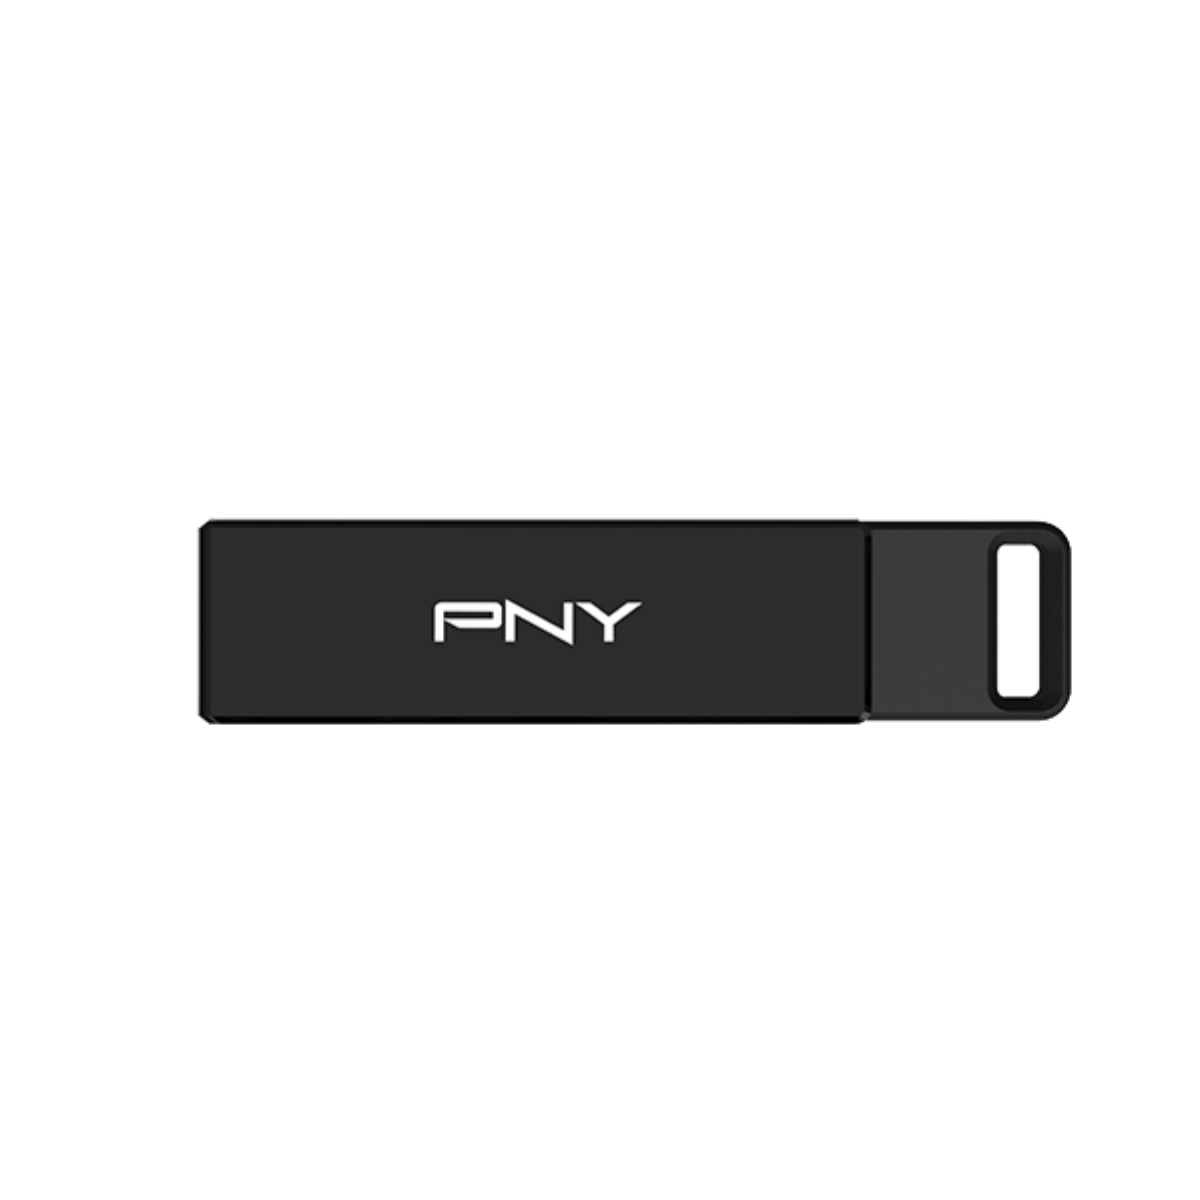 The PNY Elite-X Type C Flash Drive